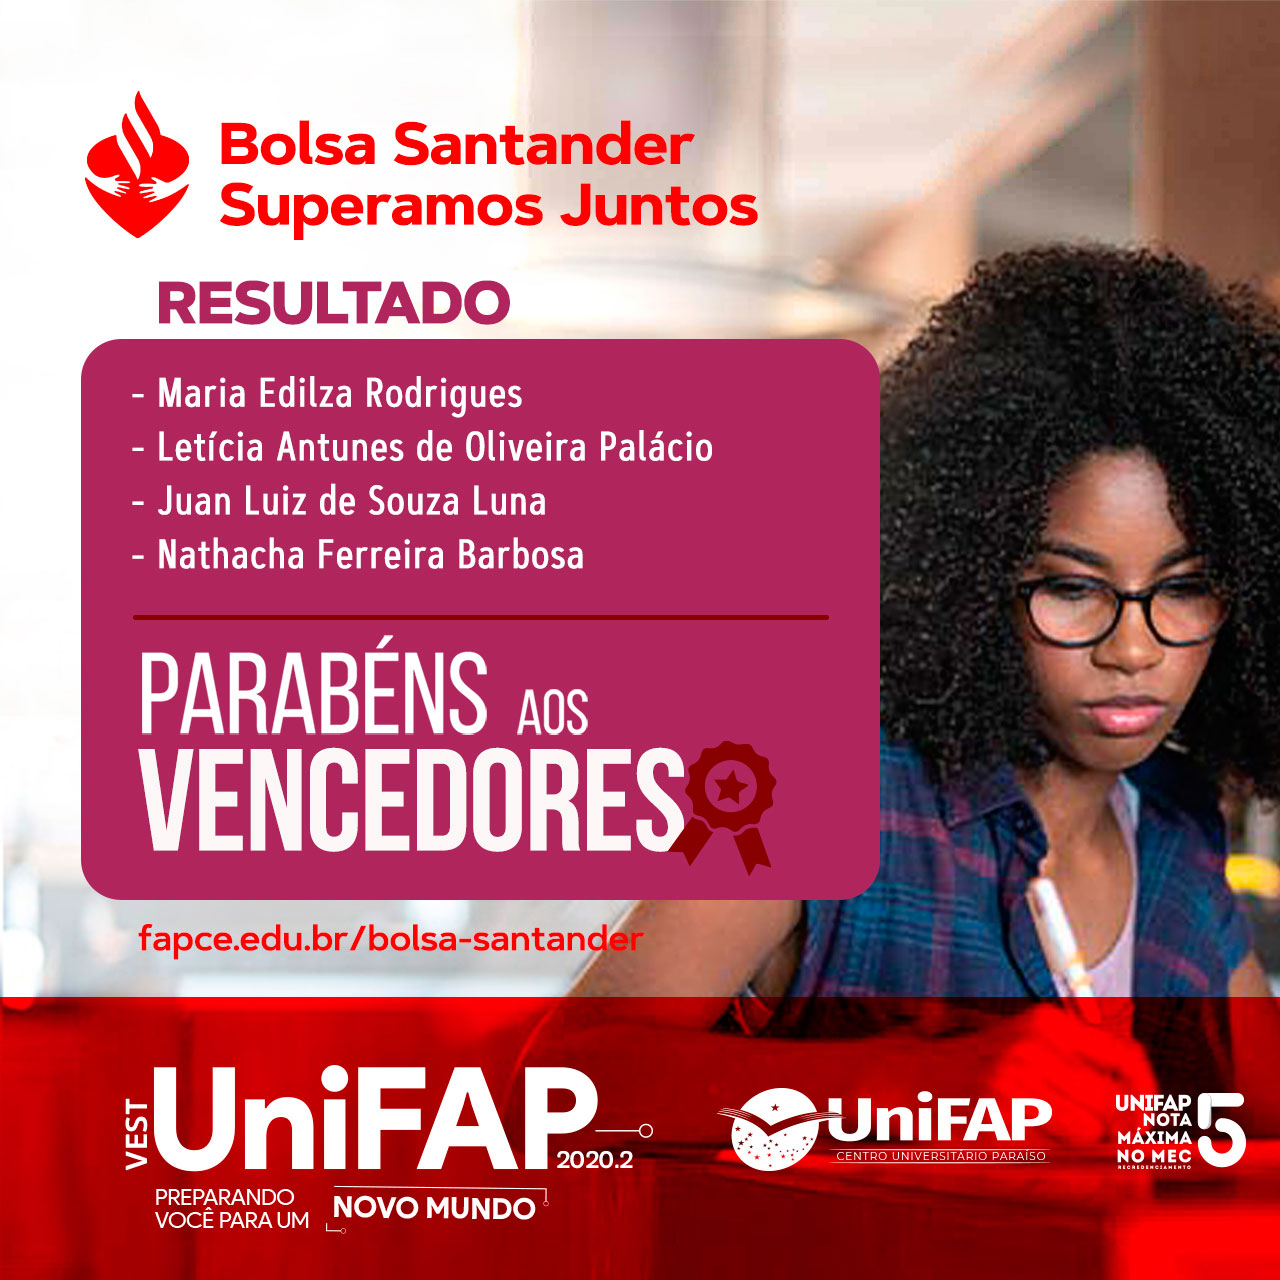 Resultado Vest UniFAP 2020.2 - Bolsa Santander Superamos Juntos